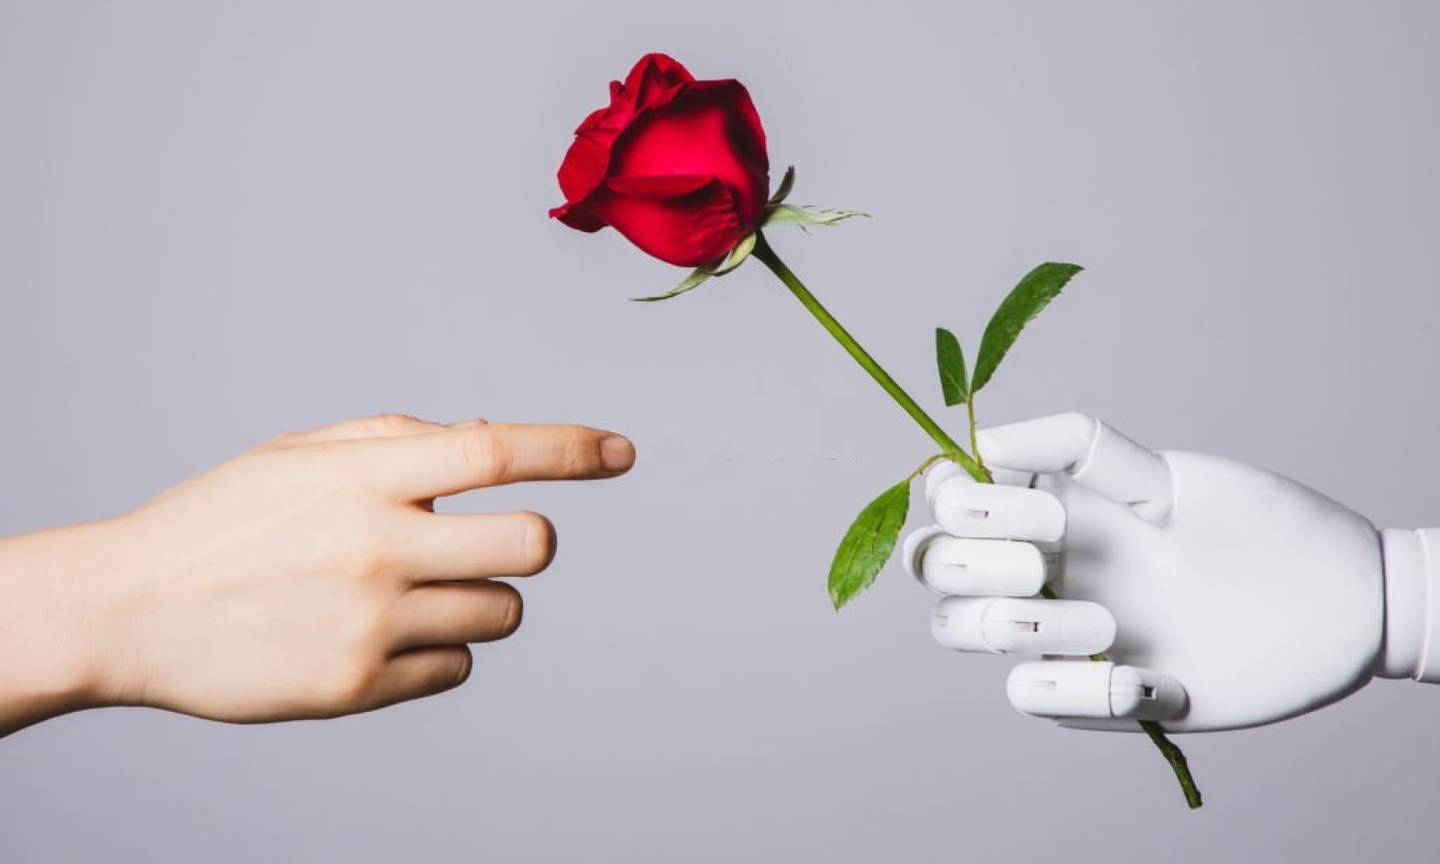 Amor entre robot y humano